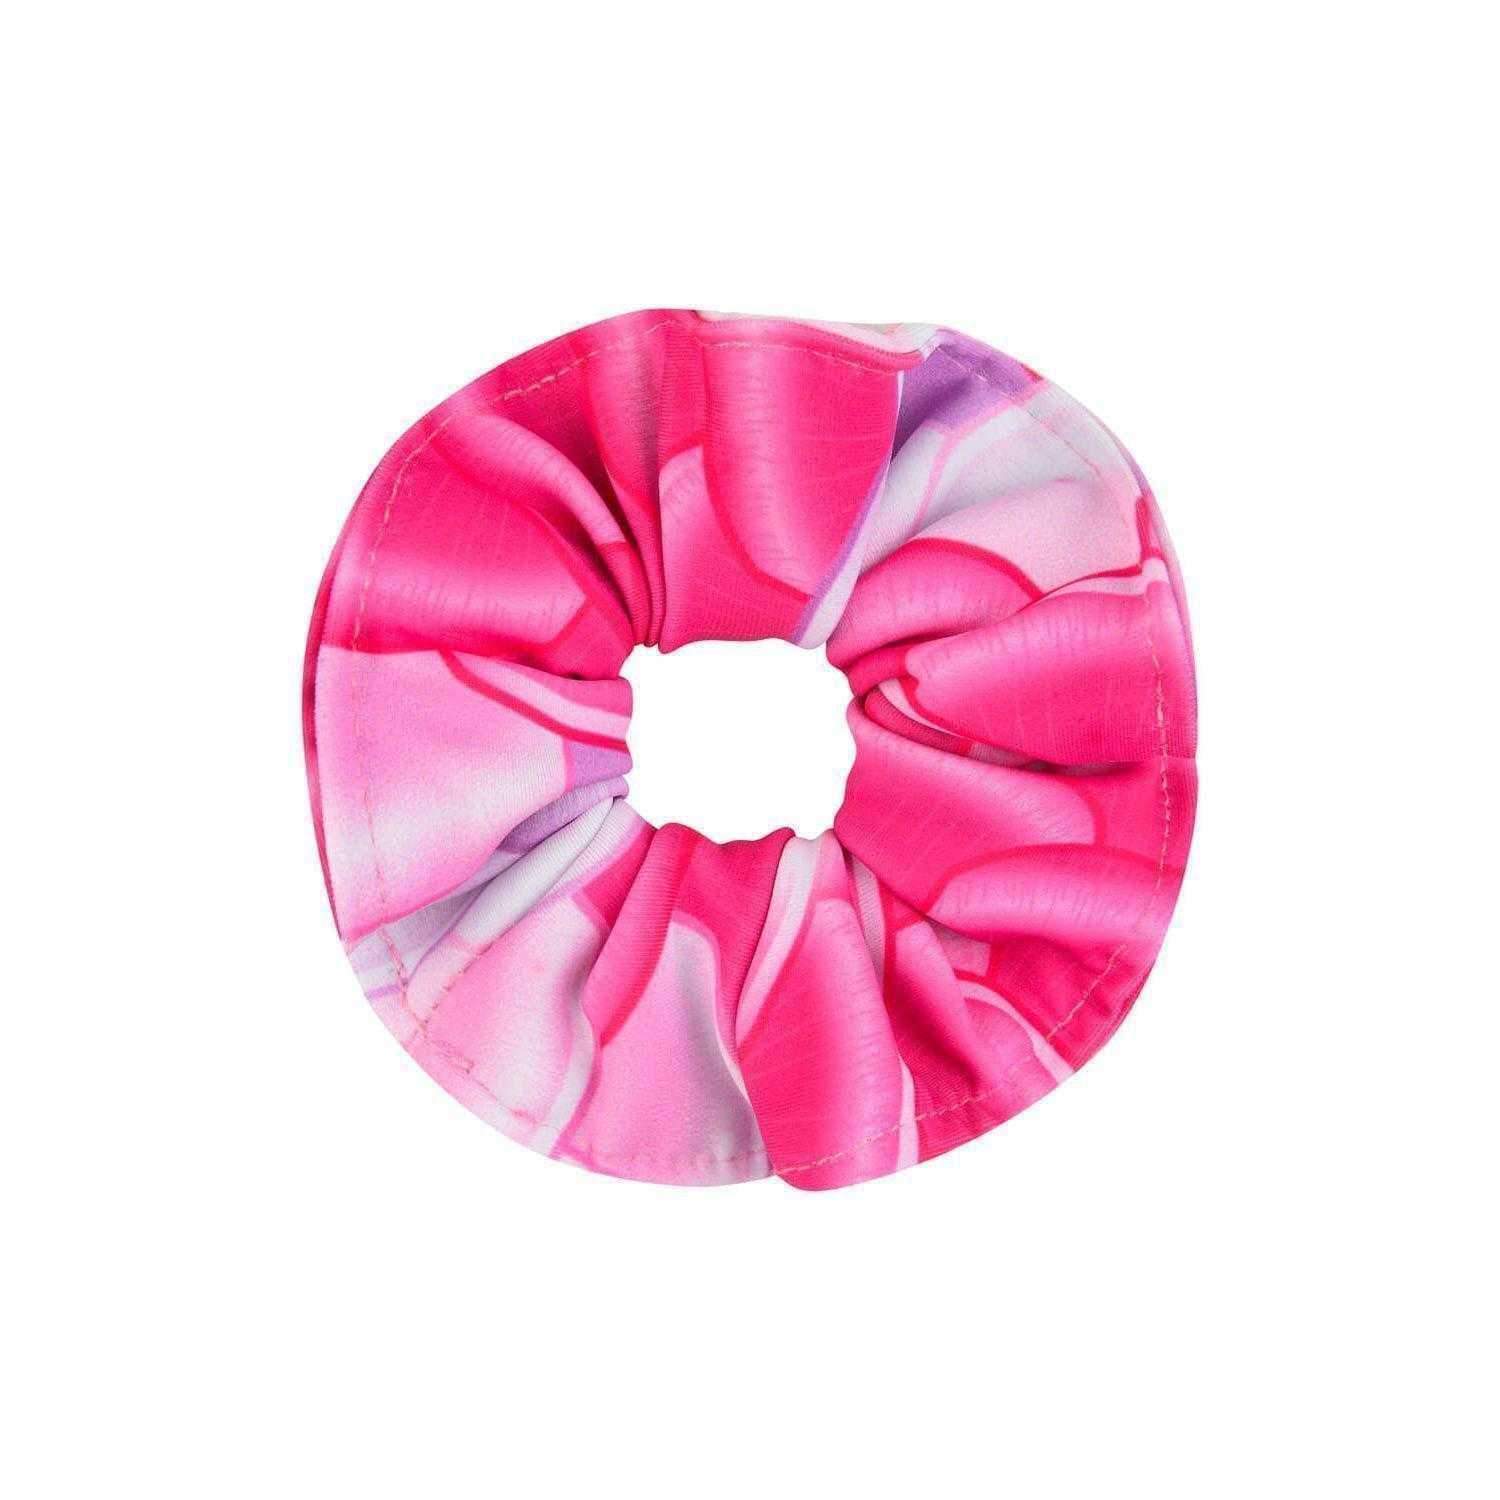 Finsbury Pink Pearl Hair Scrunchie - Mermaids Tail UK